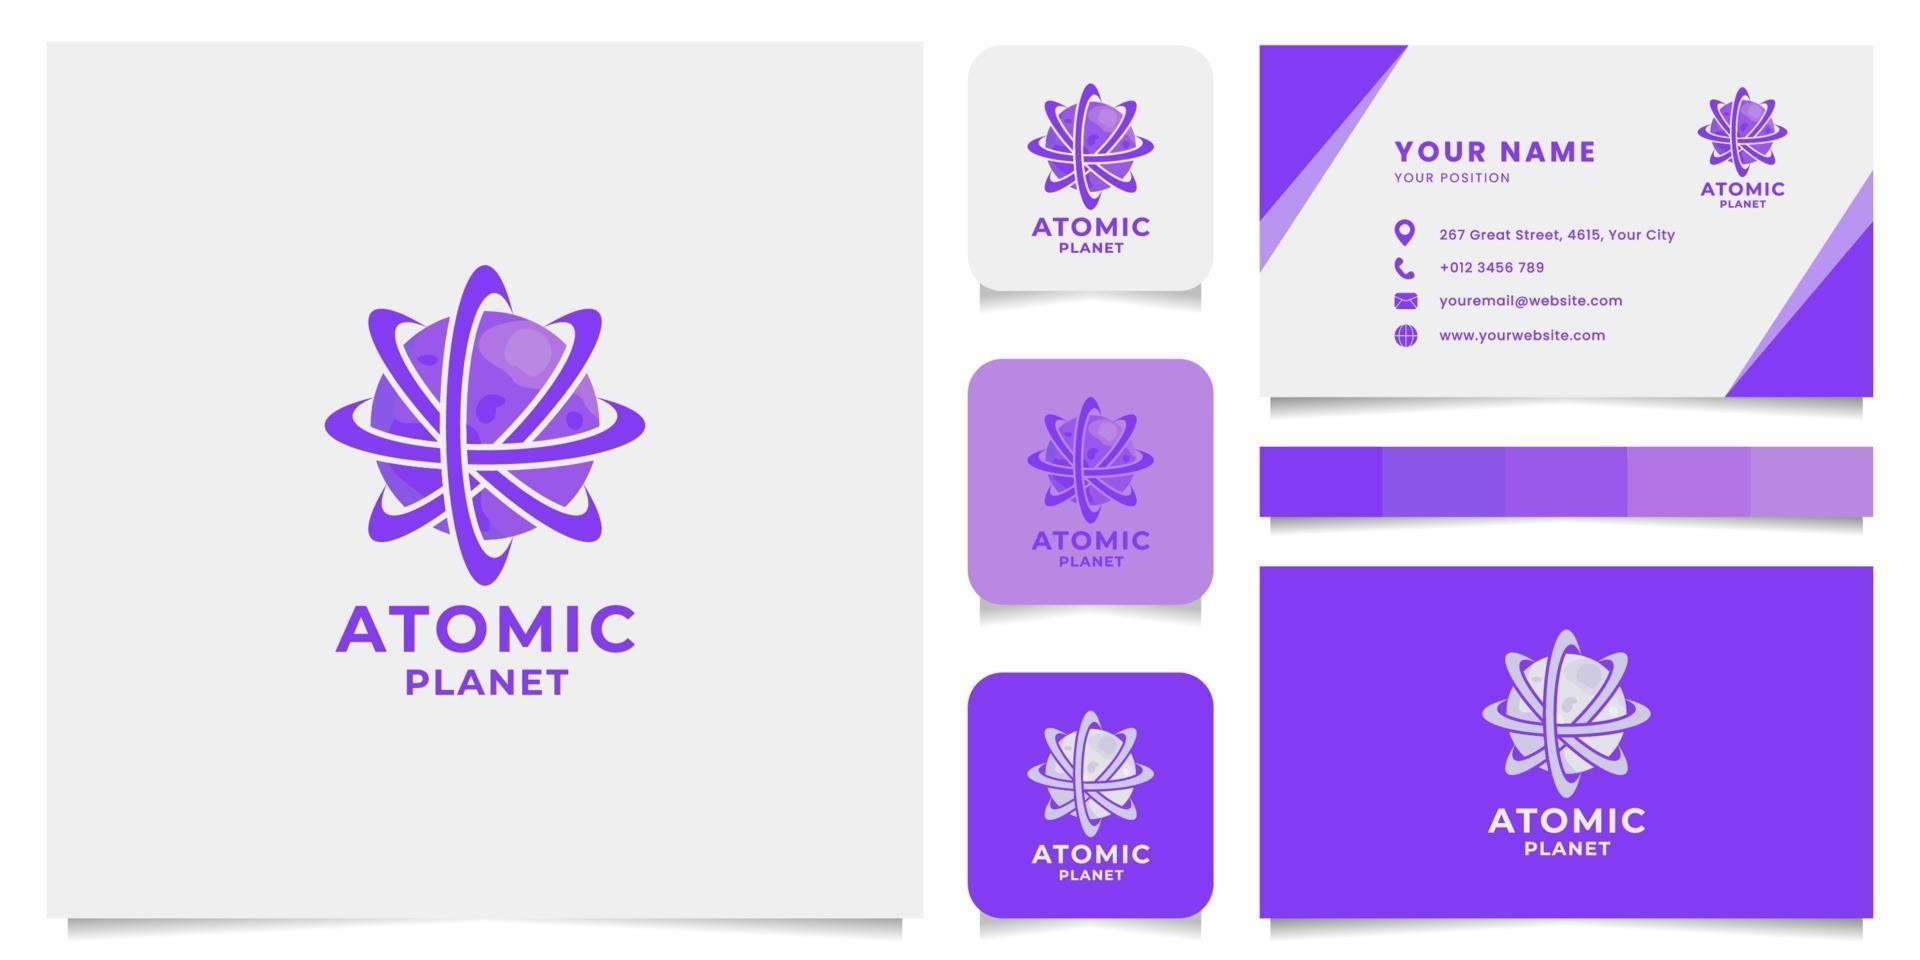 logotipo do planeta atômico com modelo de cartão de visita vetor